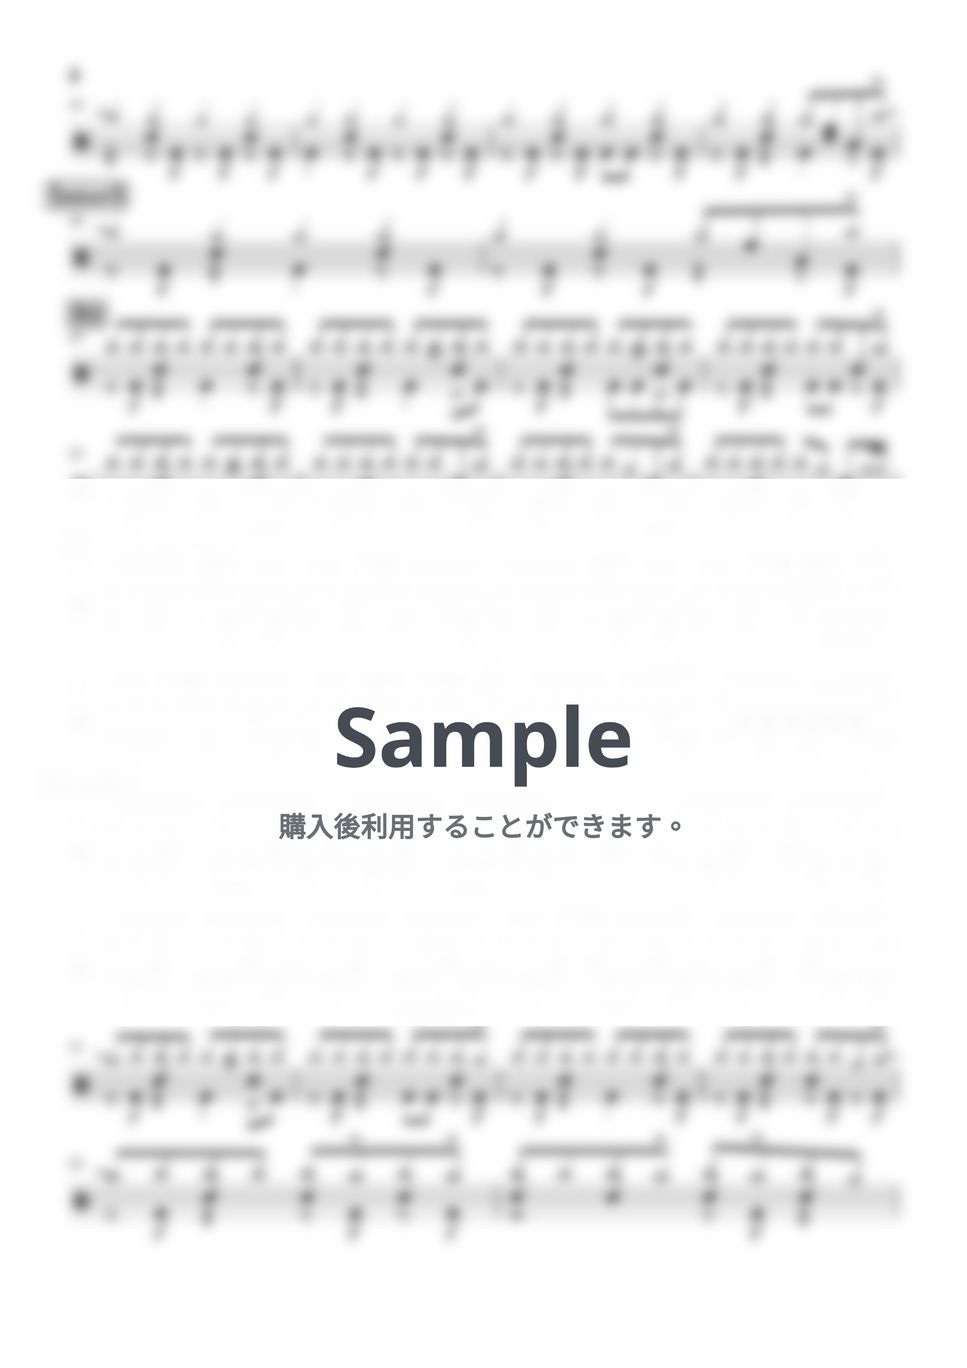 くるり - HOW TO GO (ドラム譜面) by cabal